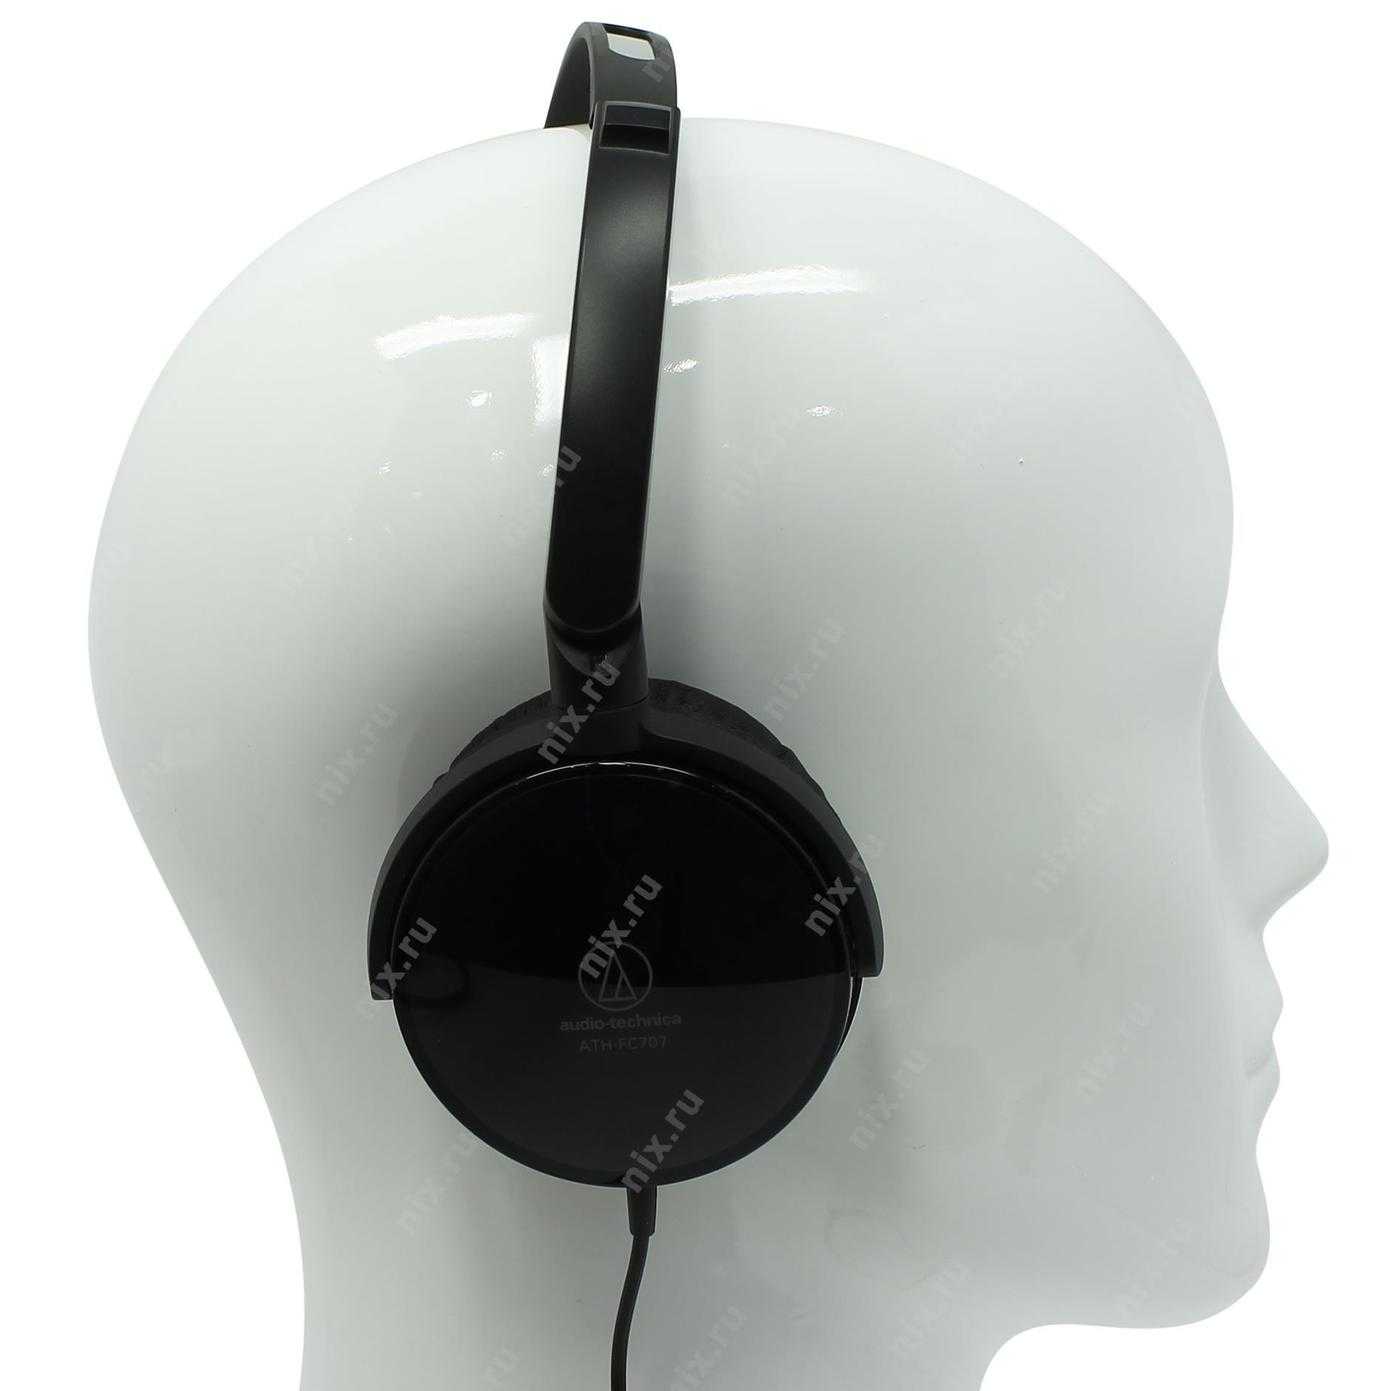 Audio-technica ath-fc707 bk (черный) - купить , скидки, цена, отзывы, обзор, характеристики - bluetooth гарнитуры и наушники